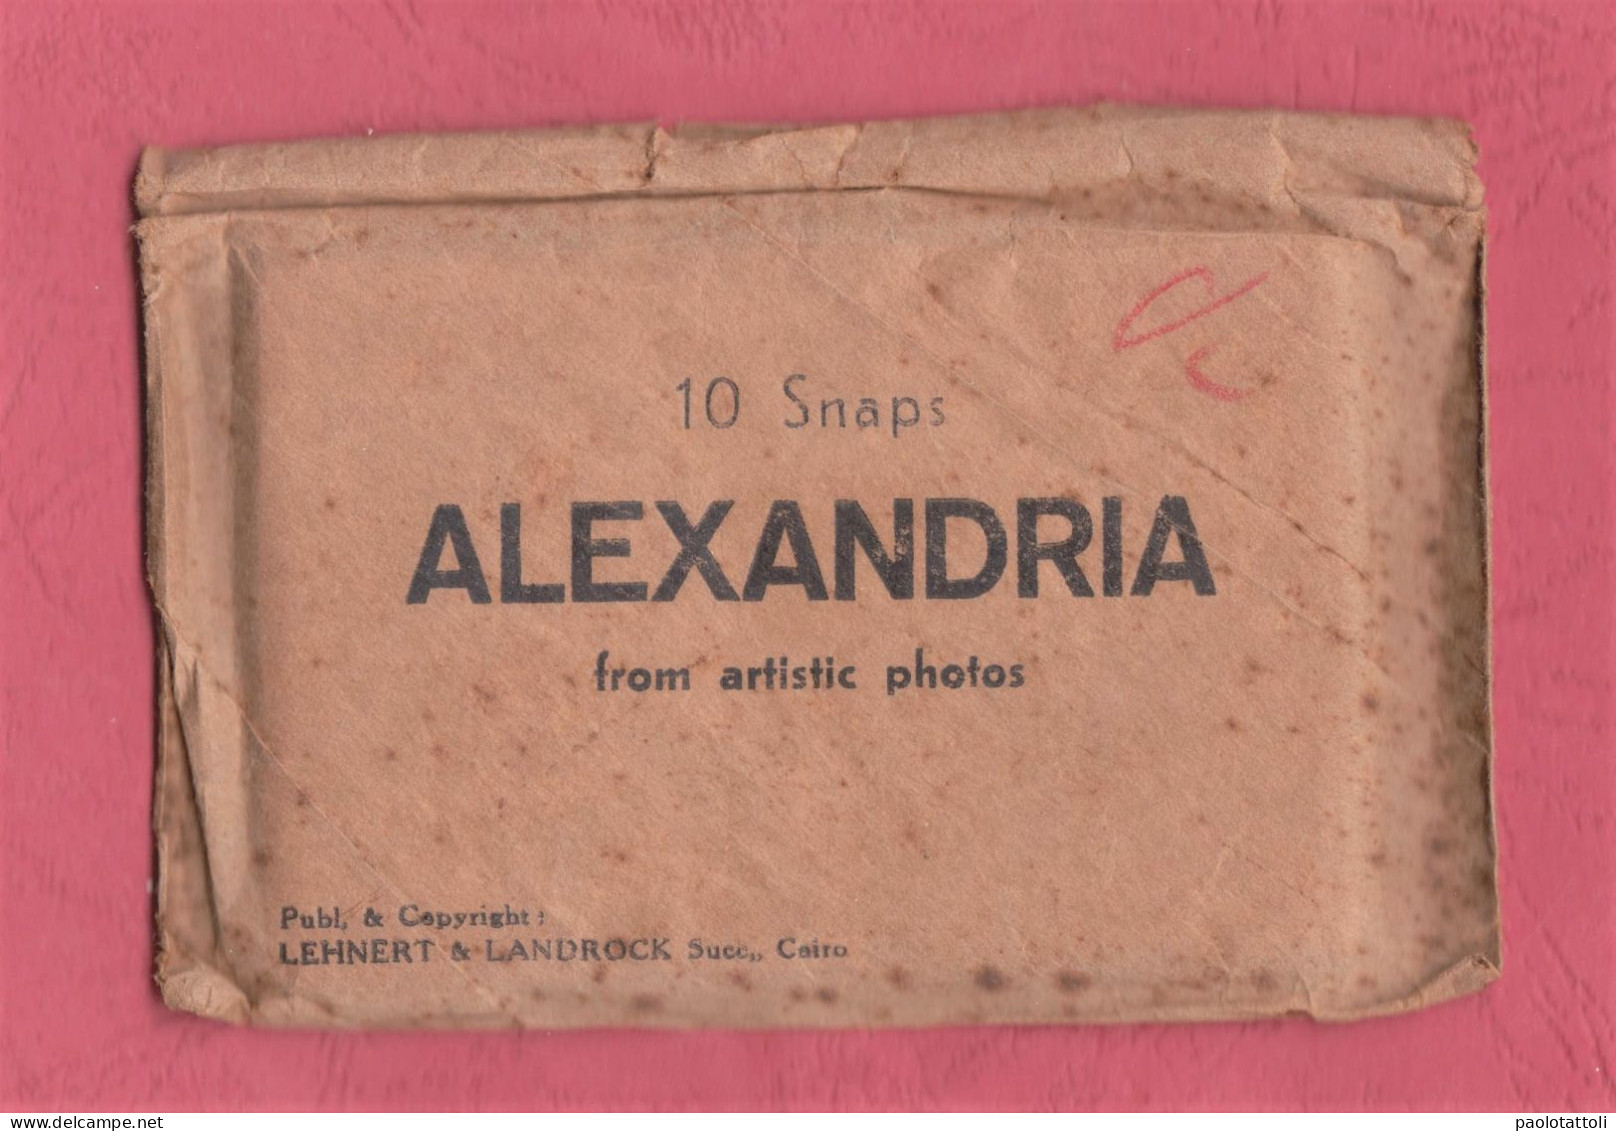 Egypt. Alexandria. 10 Snap From Artistic Photos. Publ. & Copyright Lehnert & Landrock. 92x 60mm. - Obj. 'Souvenir De'